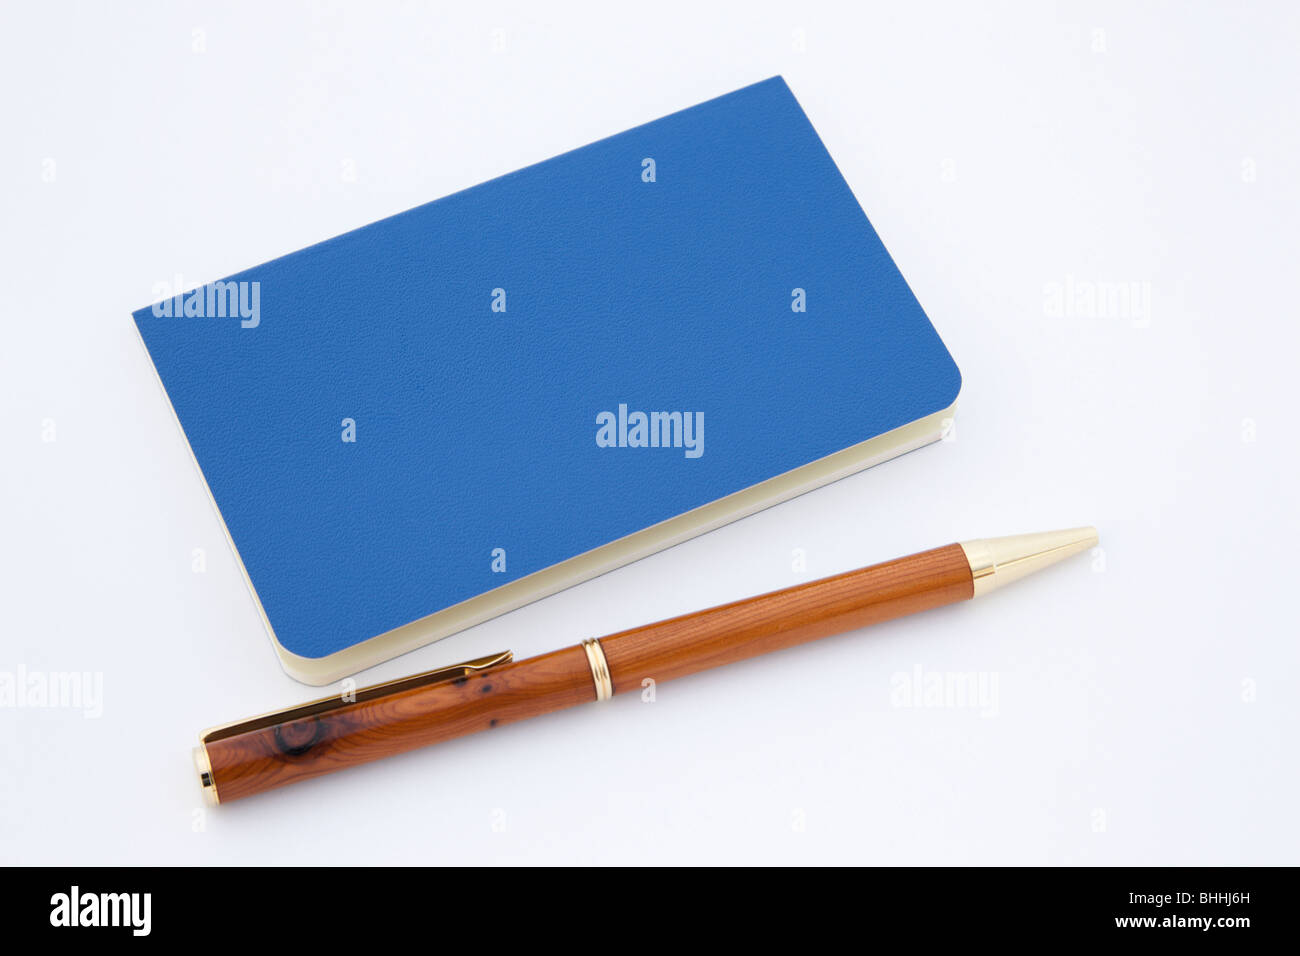 Nahaufnahme von einem blauen Moleskine-Notizbuch mit einem hölzernen Kugelschreiber auf einem weißen Hintergrund. Stockfoto